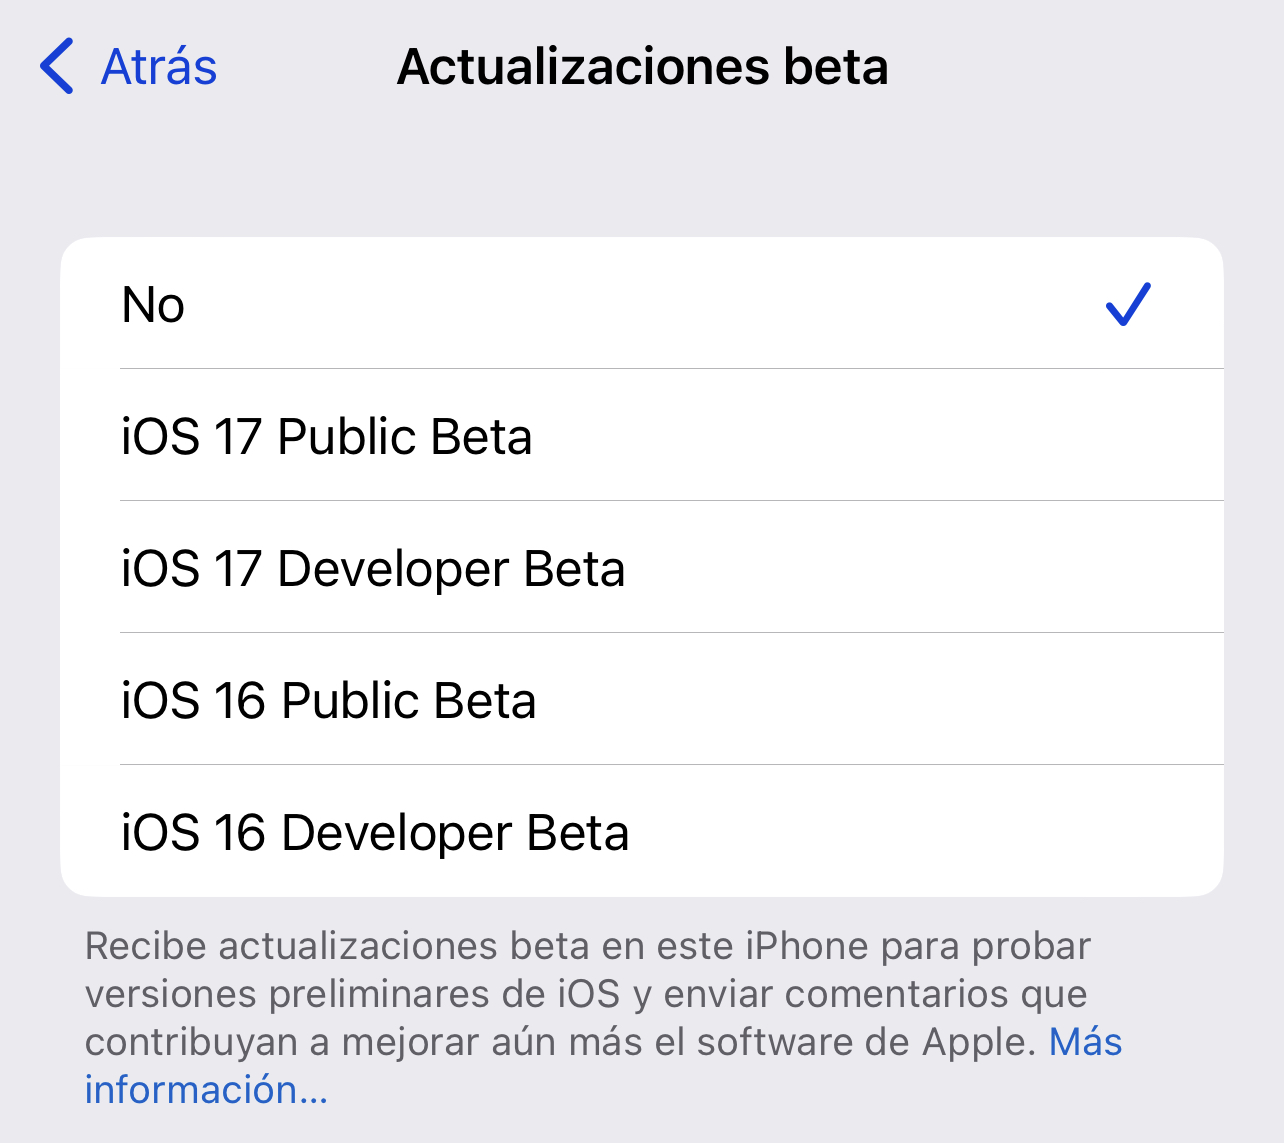 Actualizaciones beta de iOS 16 e iOS 17